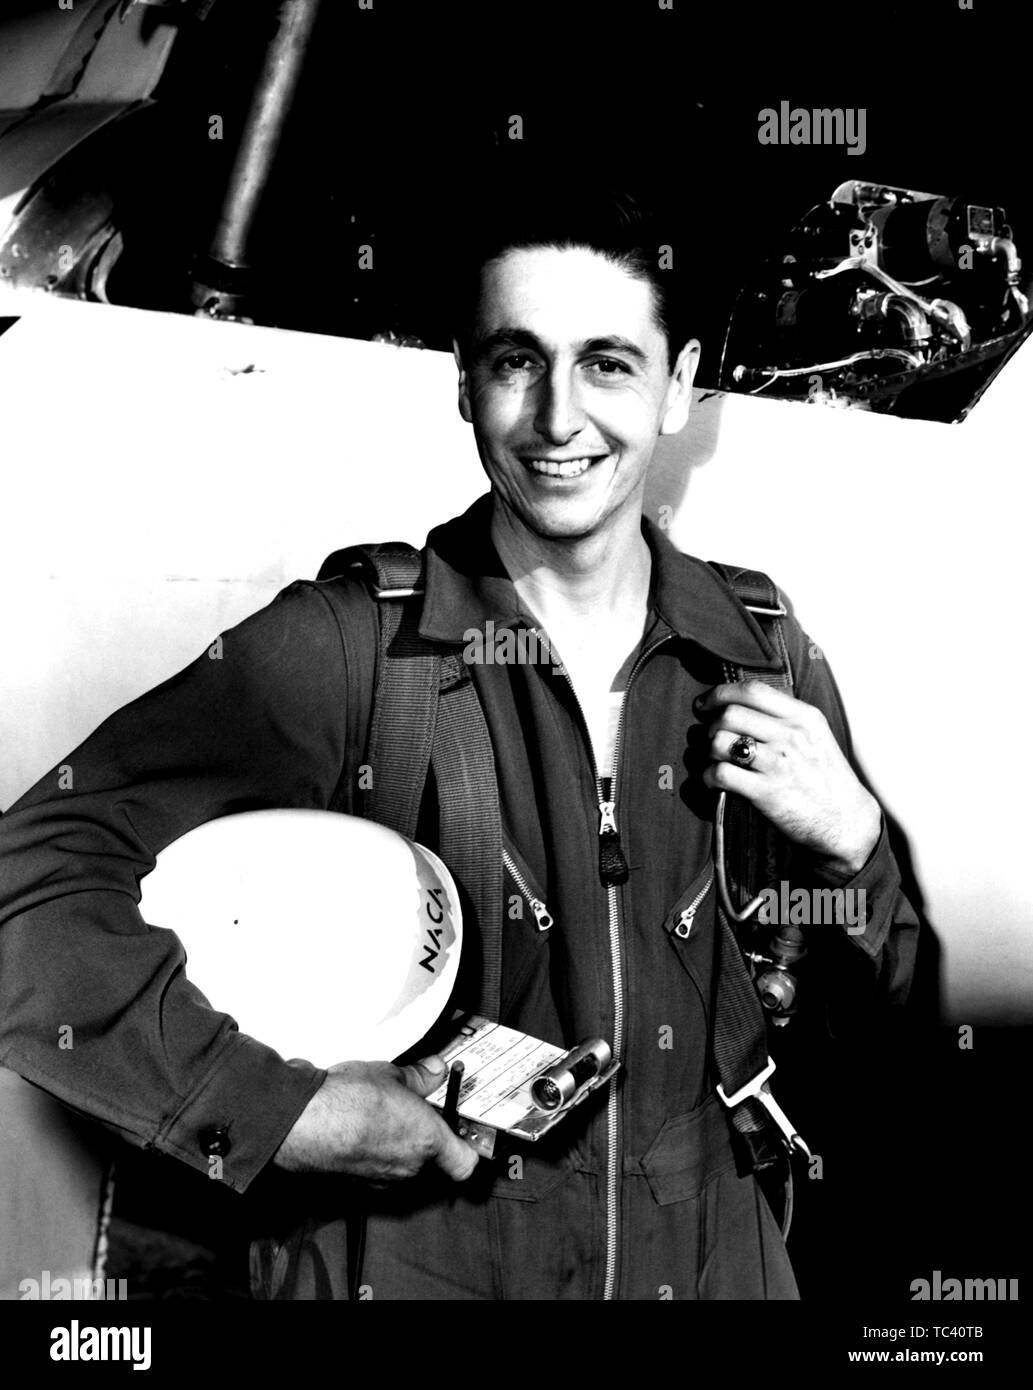 Le NACA UN PILOTE Scott Crossfield posant à côté de l'aéronef D-558-2 après premier vol Mach 2, le 20 novembre, 1953. Droit avec la permission de la National Aeronautics and Space Administration (NASA). () Banque D'Images